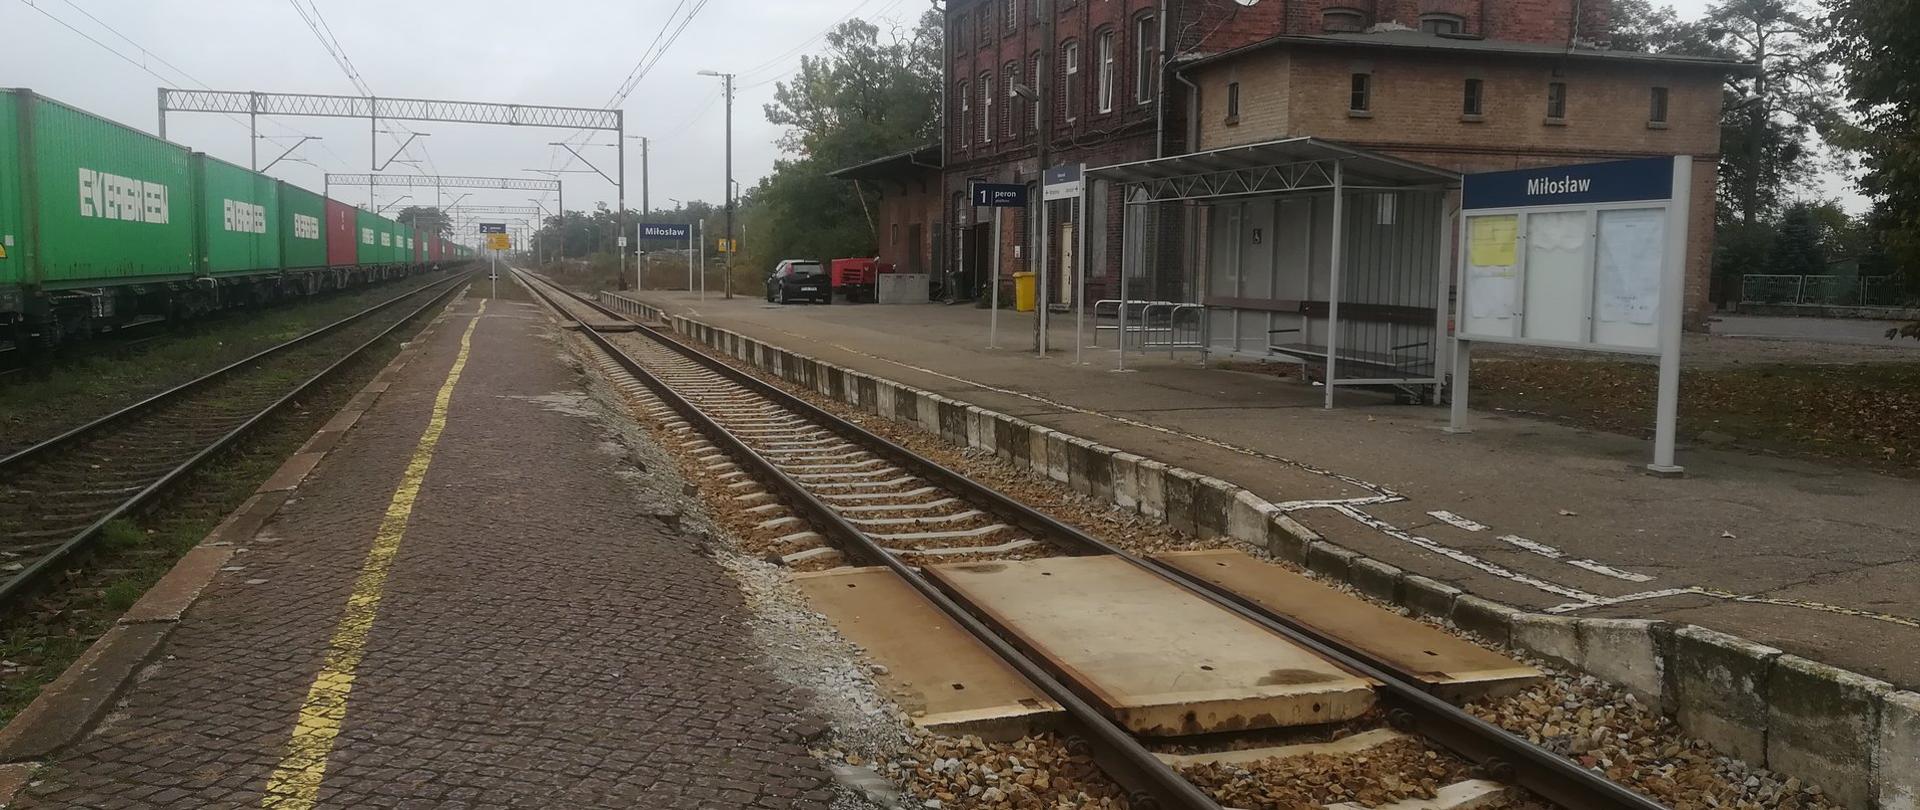 Peron na stacji Miłosław